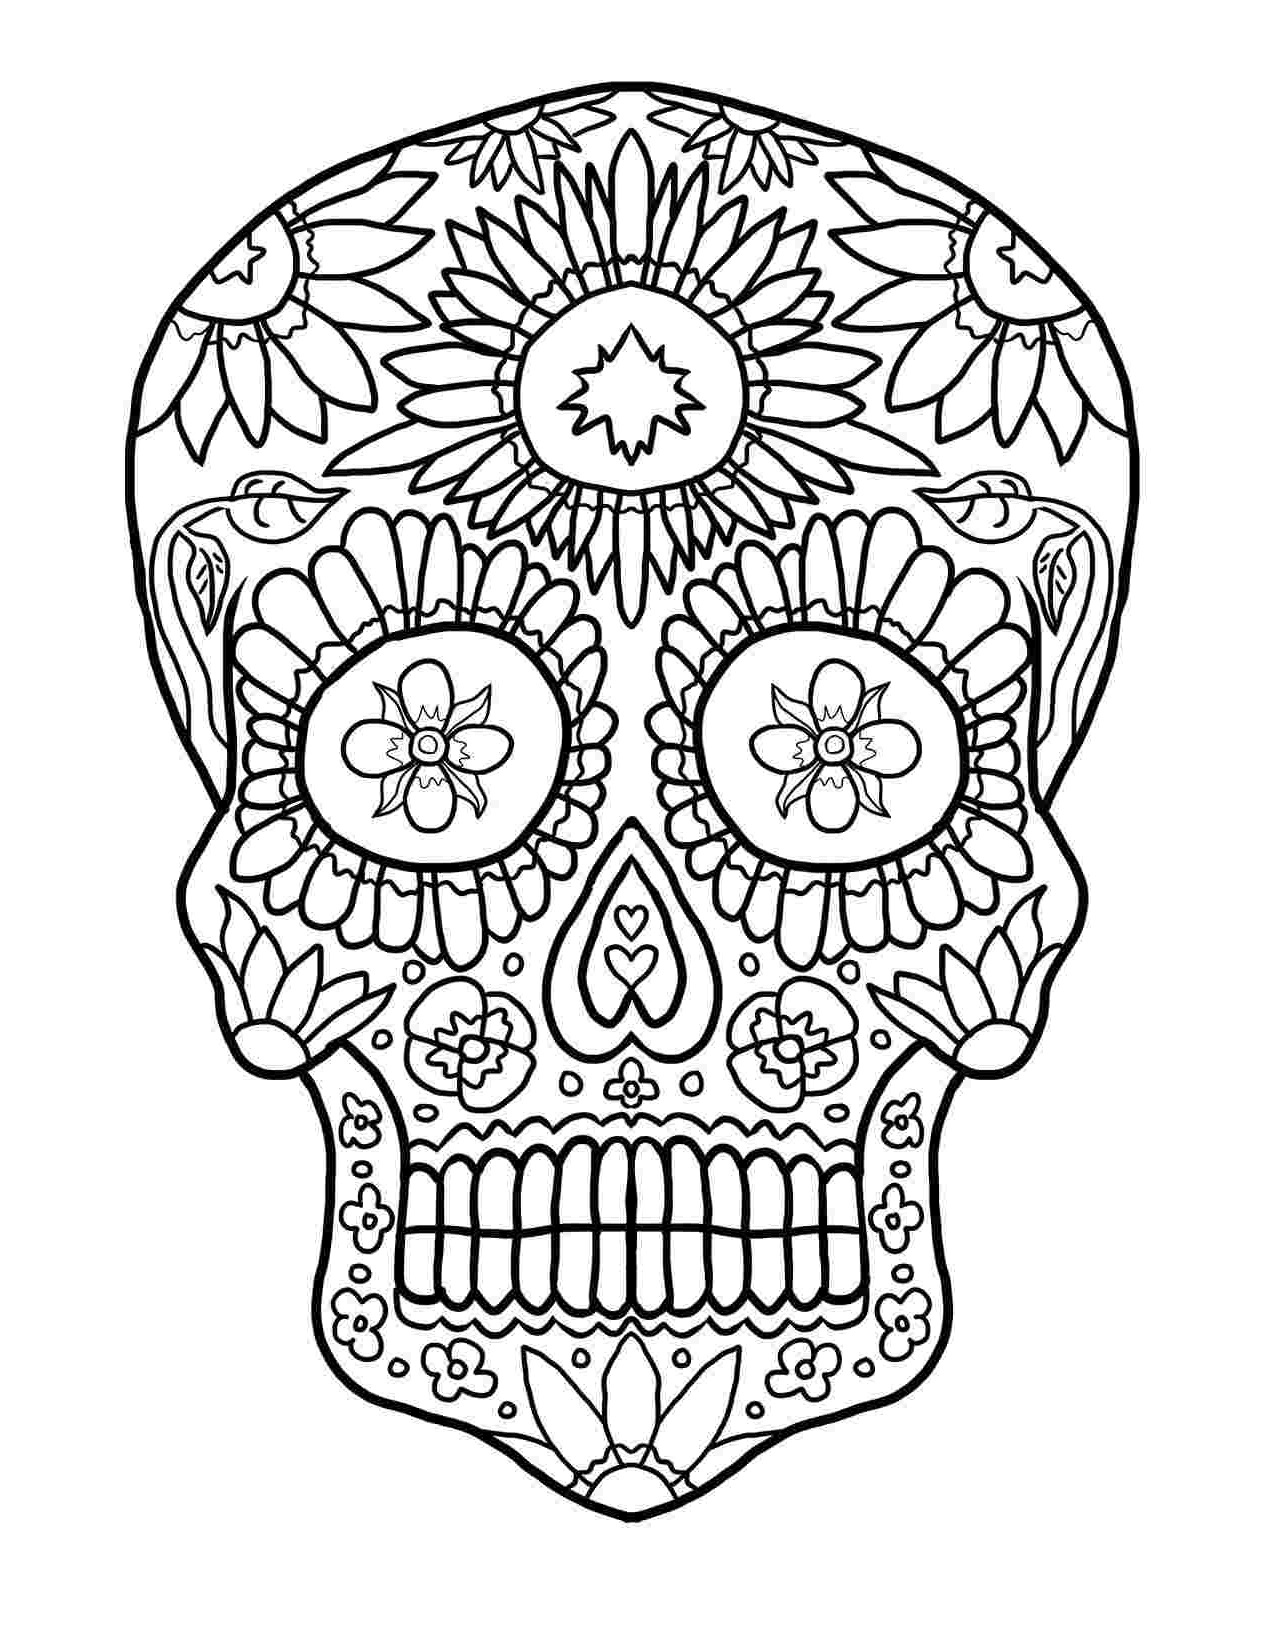 dessins de tete de mort a colorier ▷【 coloriage gratuit 】dessins 2019 dedans coloriage tete de mort mexicaine a imprimer gratuit